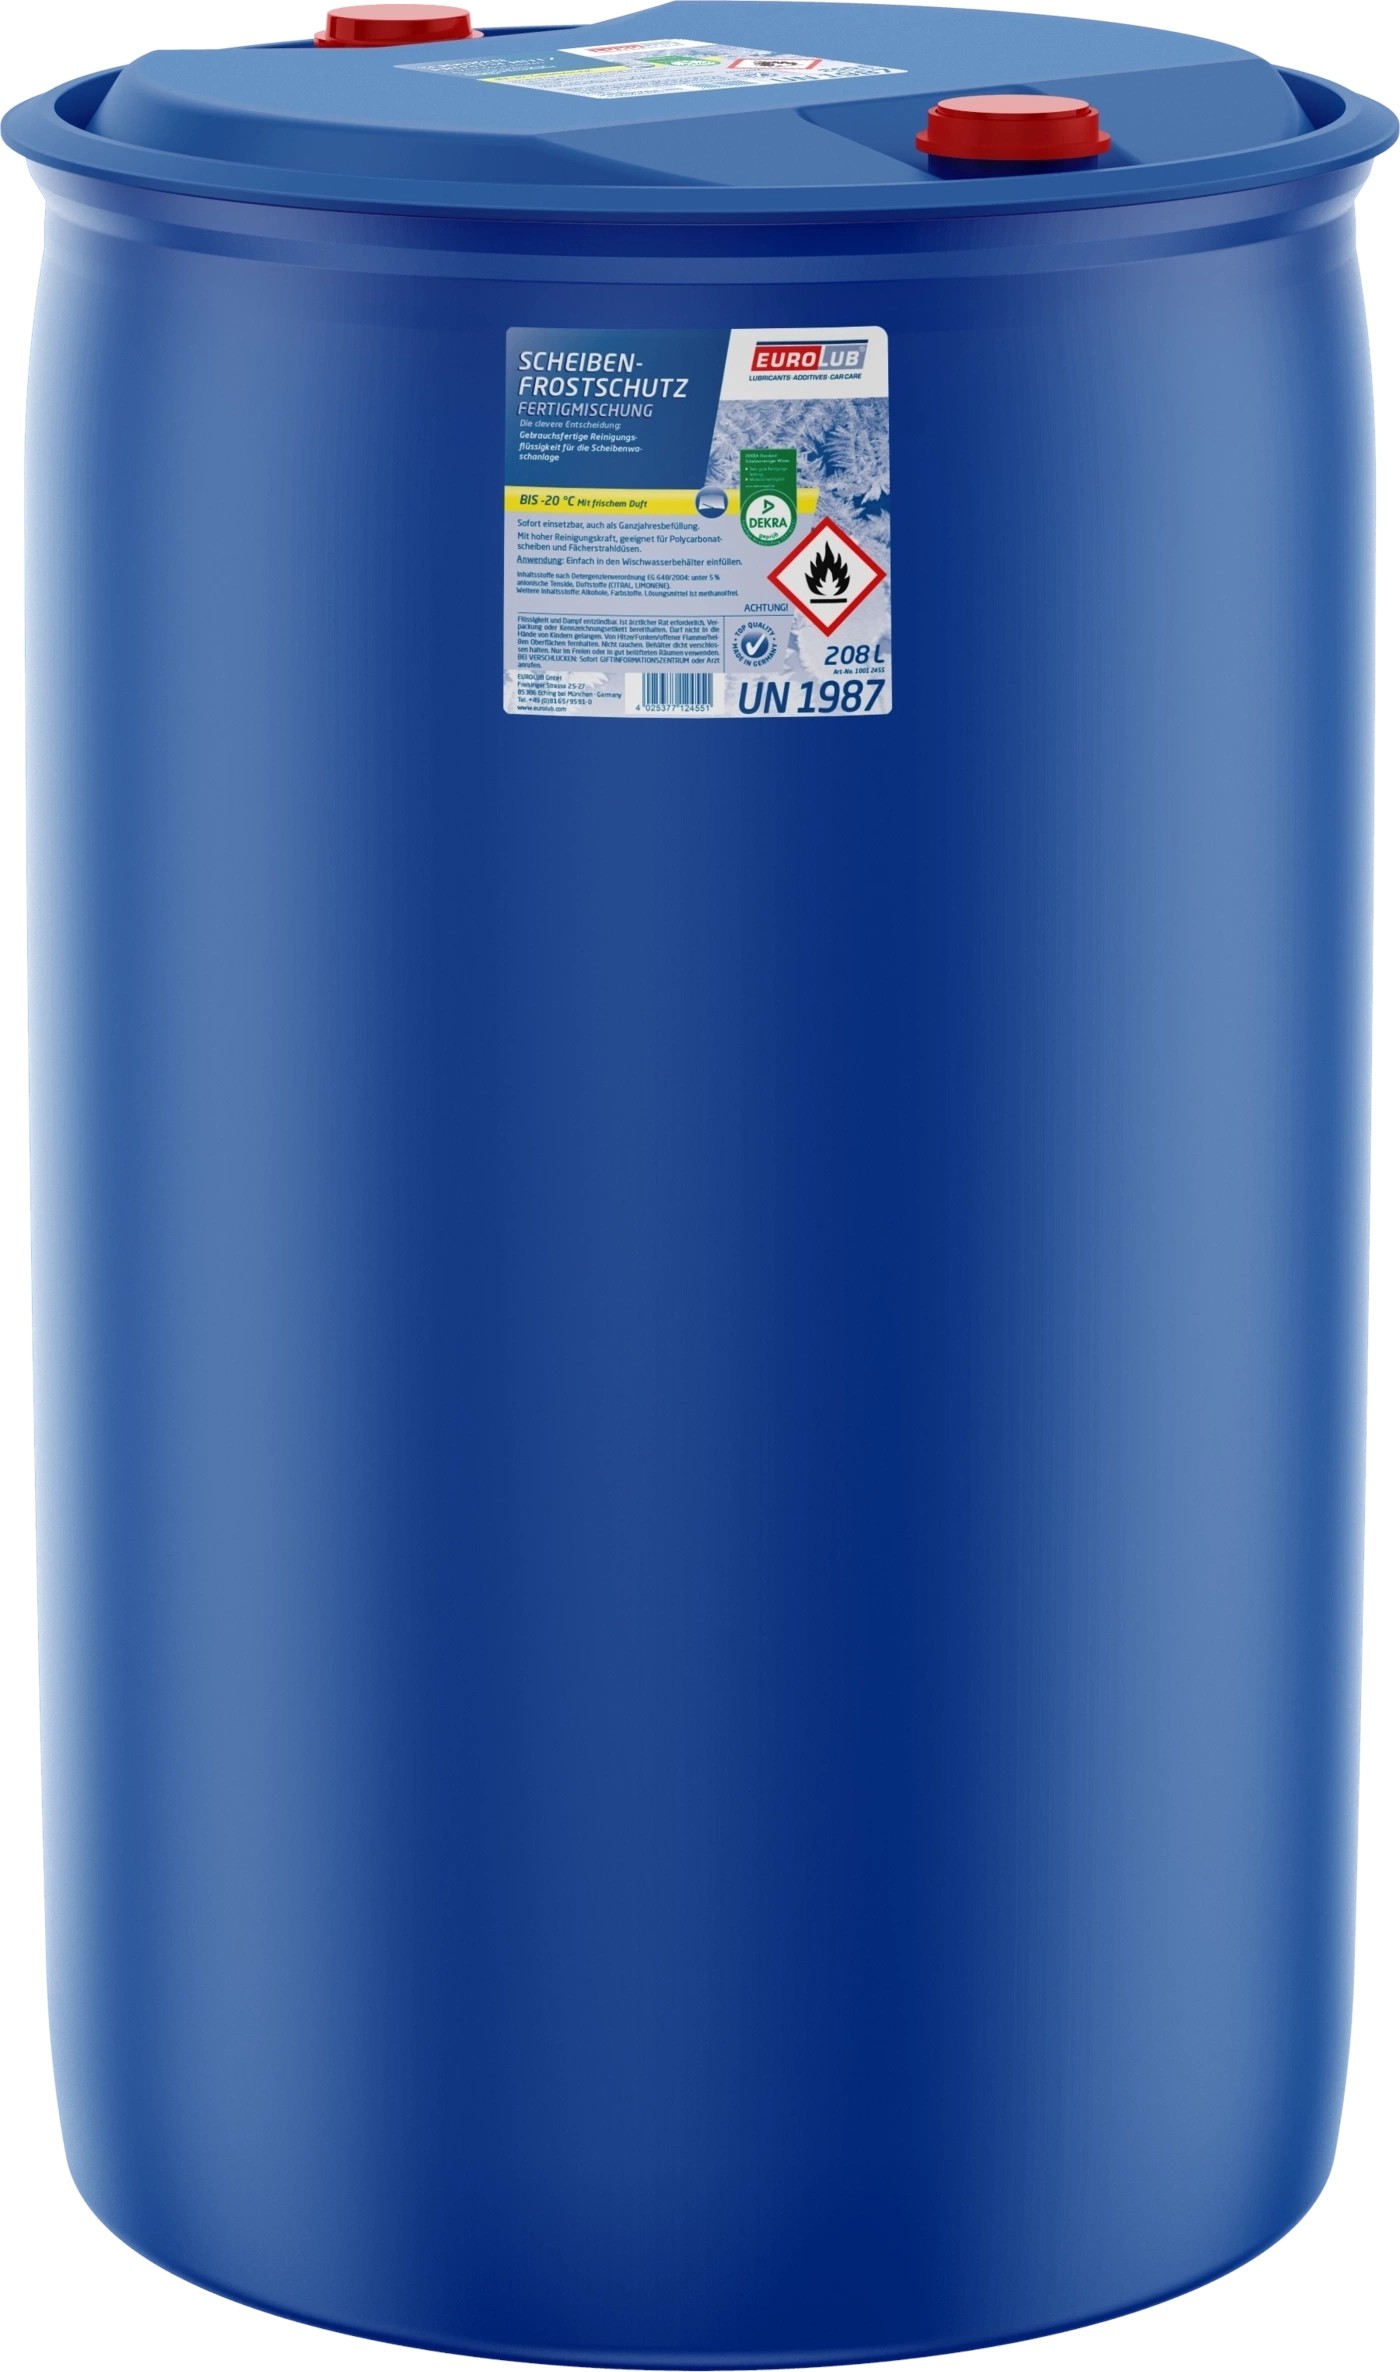 Scheibenfrostschutz 208 Liter Fertigm. -30°C